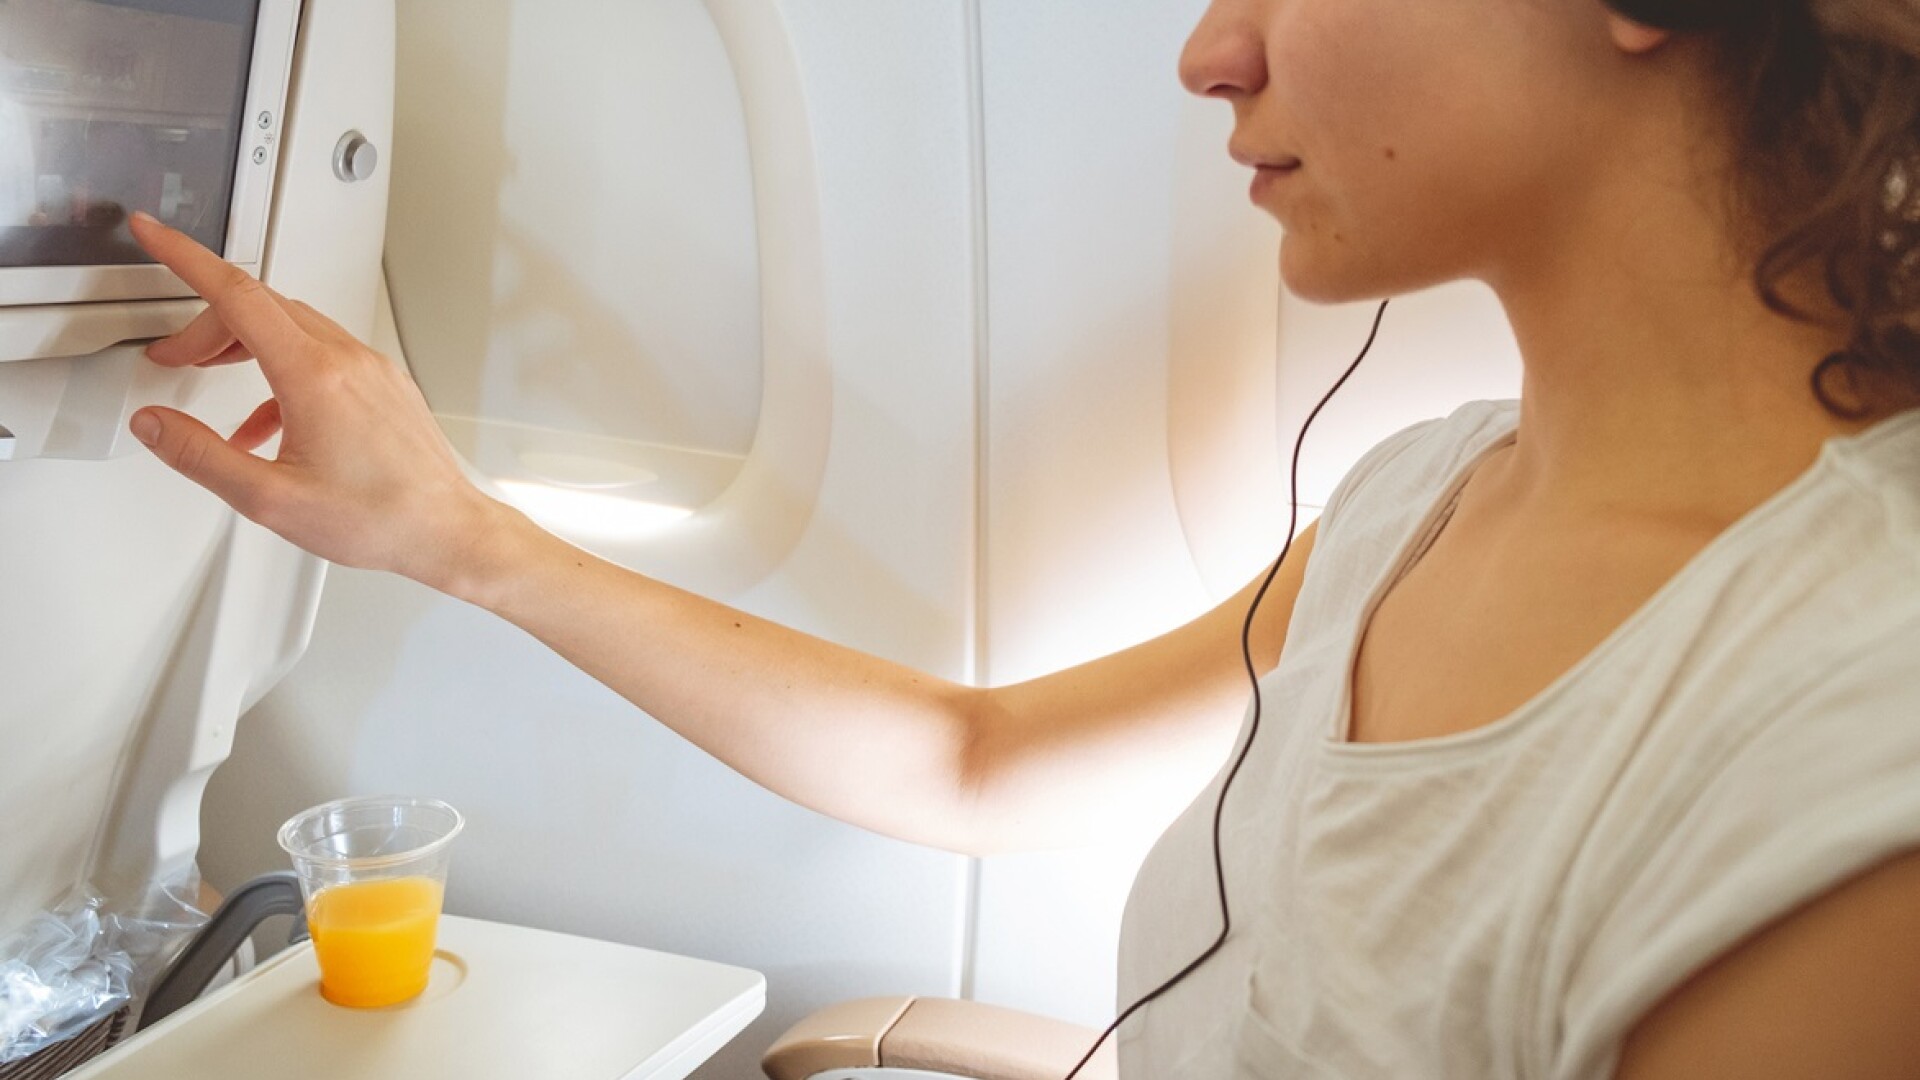 Hărțuire în timpul zborului: Ce mesaje îi apăreau unei femei pe ecranul din fața scaunului